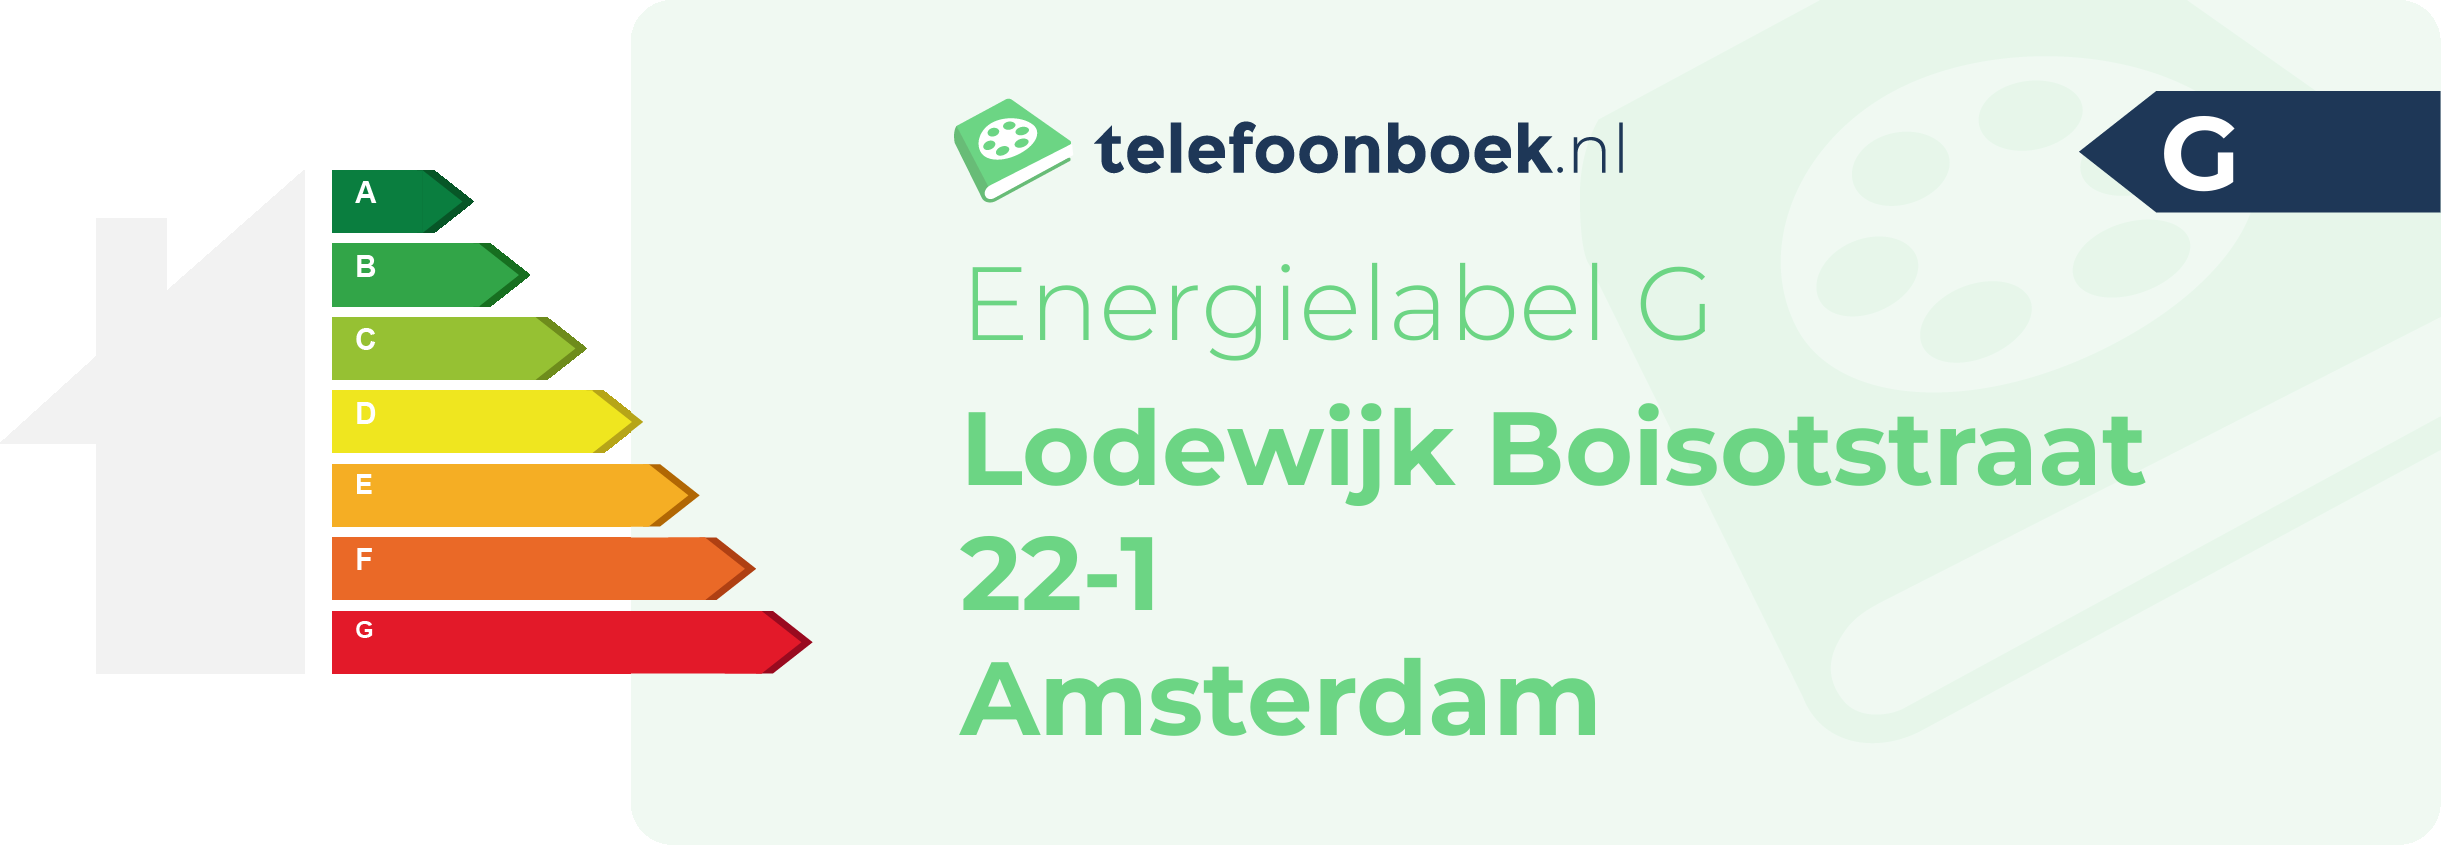 Energielabel Lodewijk Boisotstraat 22-1 Amsterdam